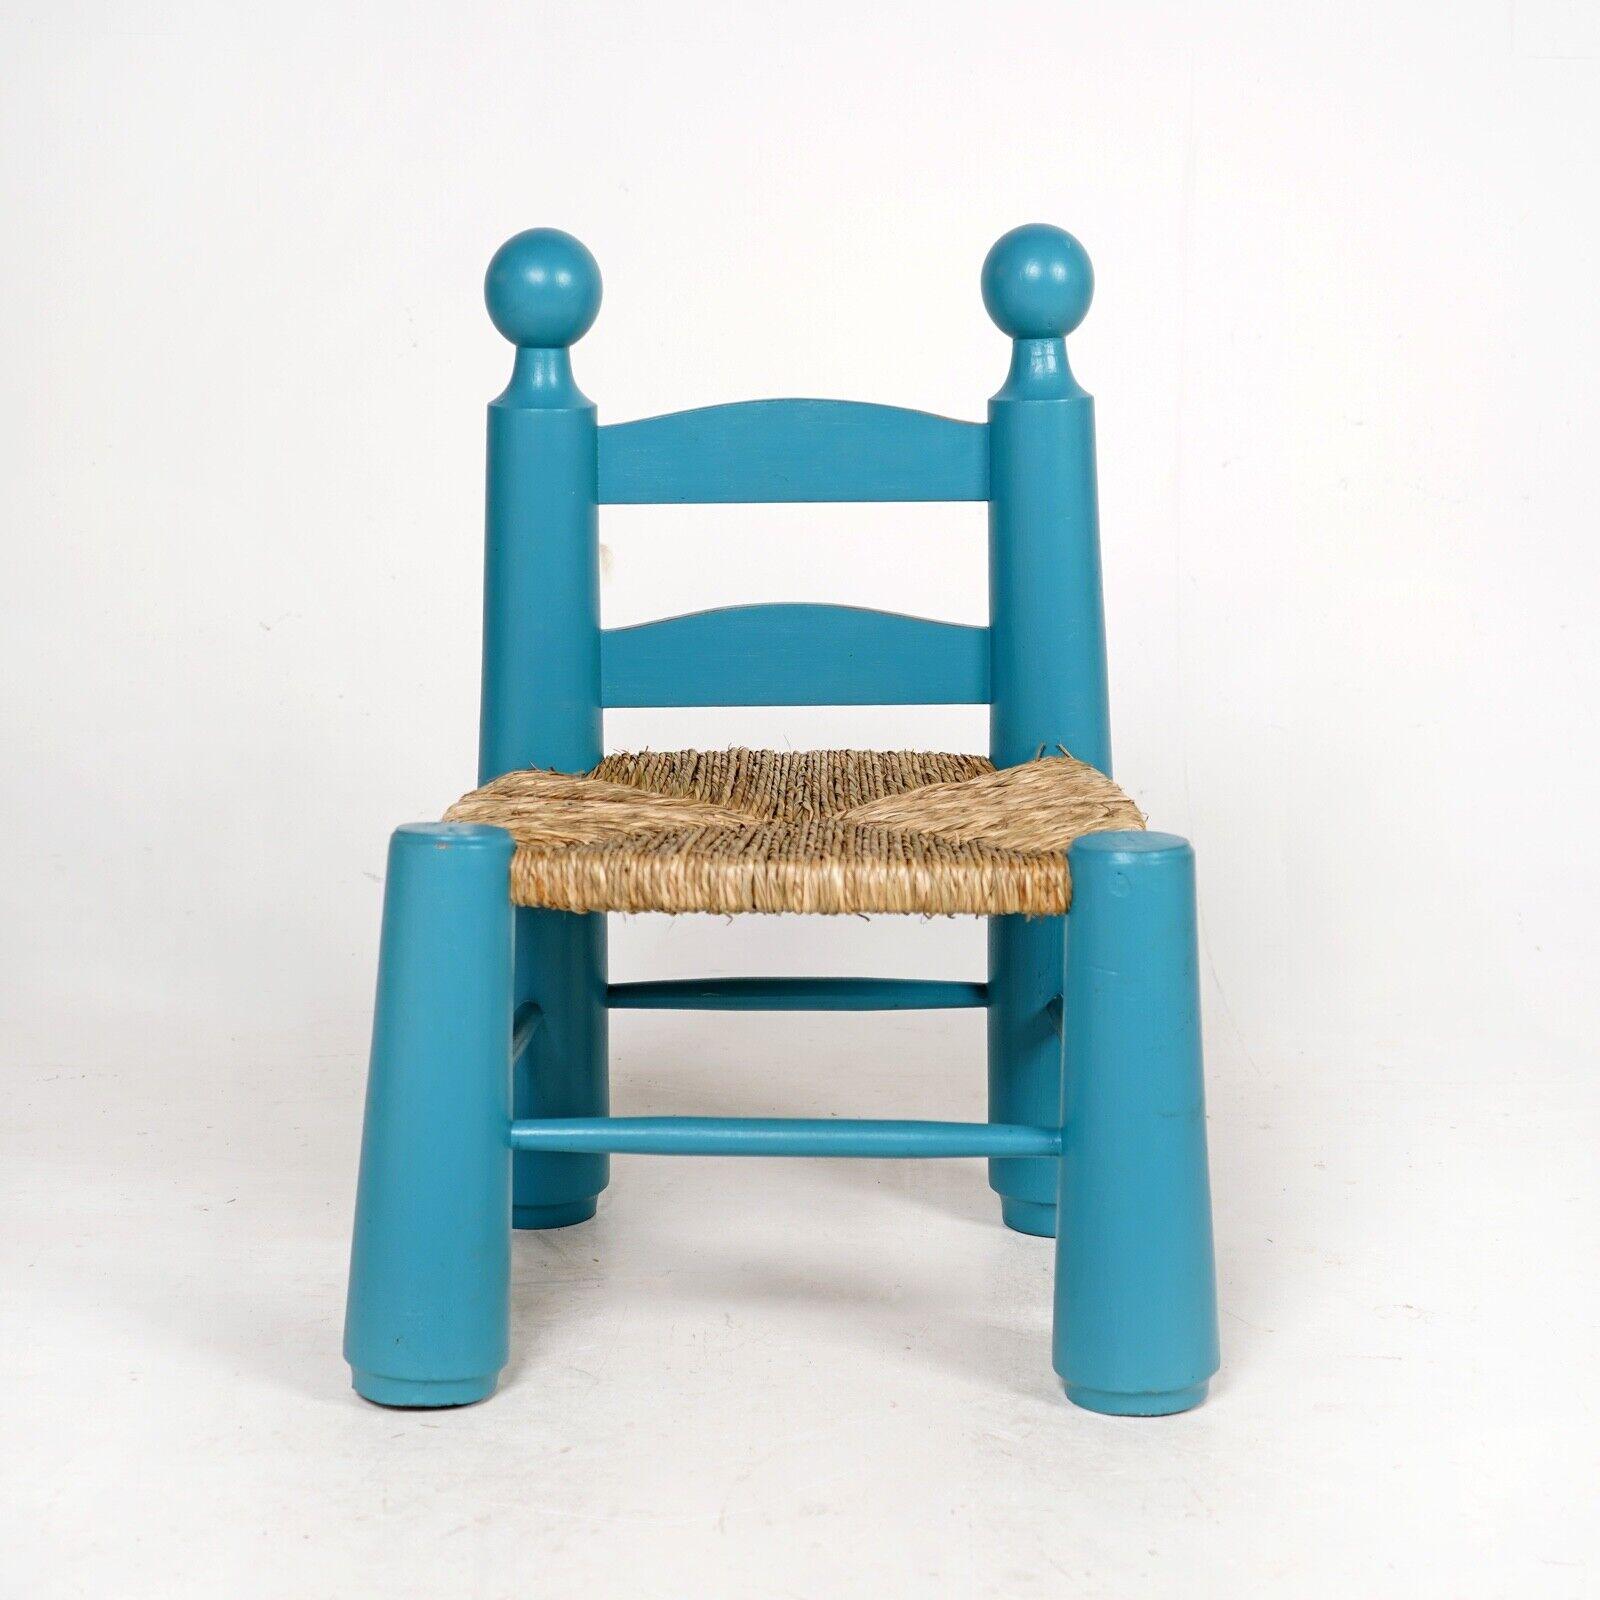 Une chaise d'enfant brutaliste en chêne massif avec un siège en jonc nouvellement tissé. Le bois a été peint et la chaise a été entièrement remise à neuf.
Fabriqué en France vers 1940, conçu par Charles Dudouyt.  


Dimensions

H 65cm L 46cm P 43cm